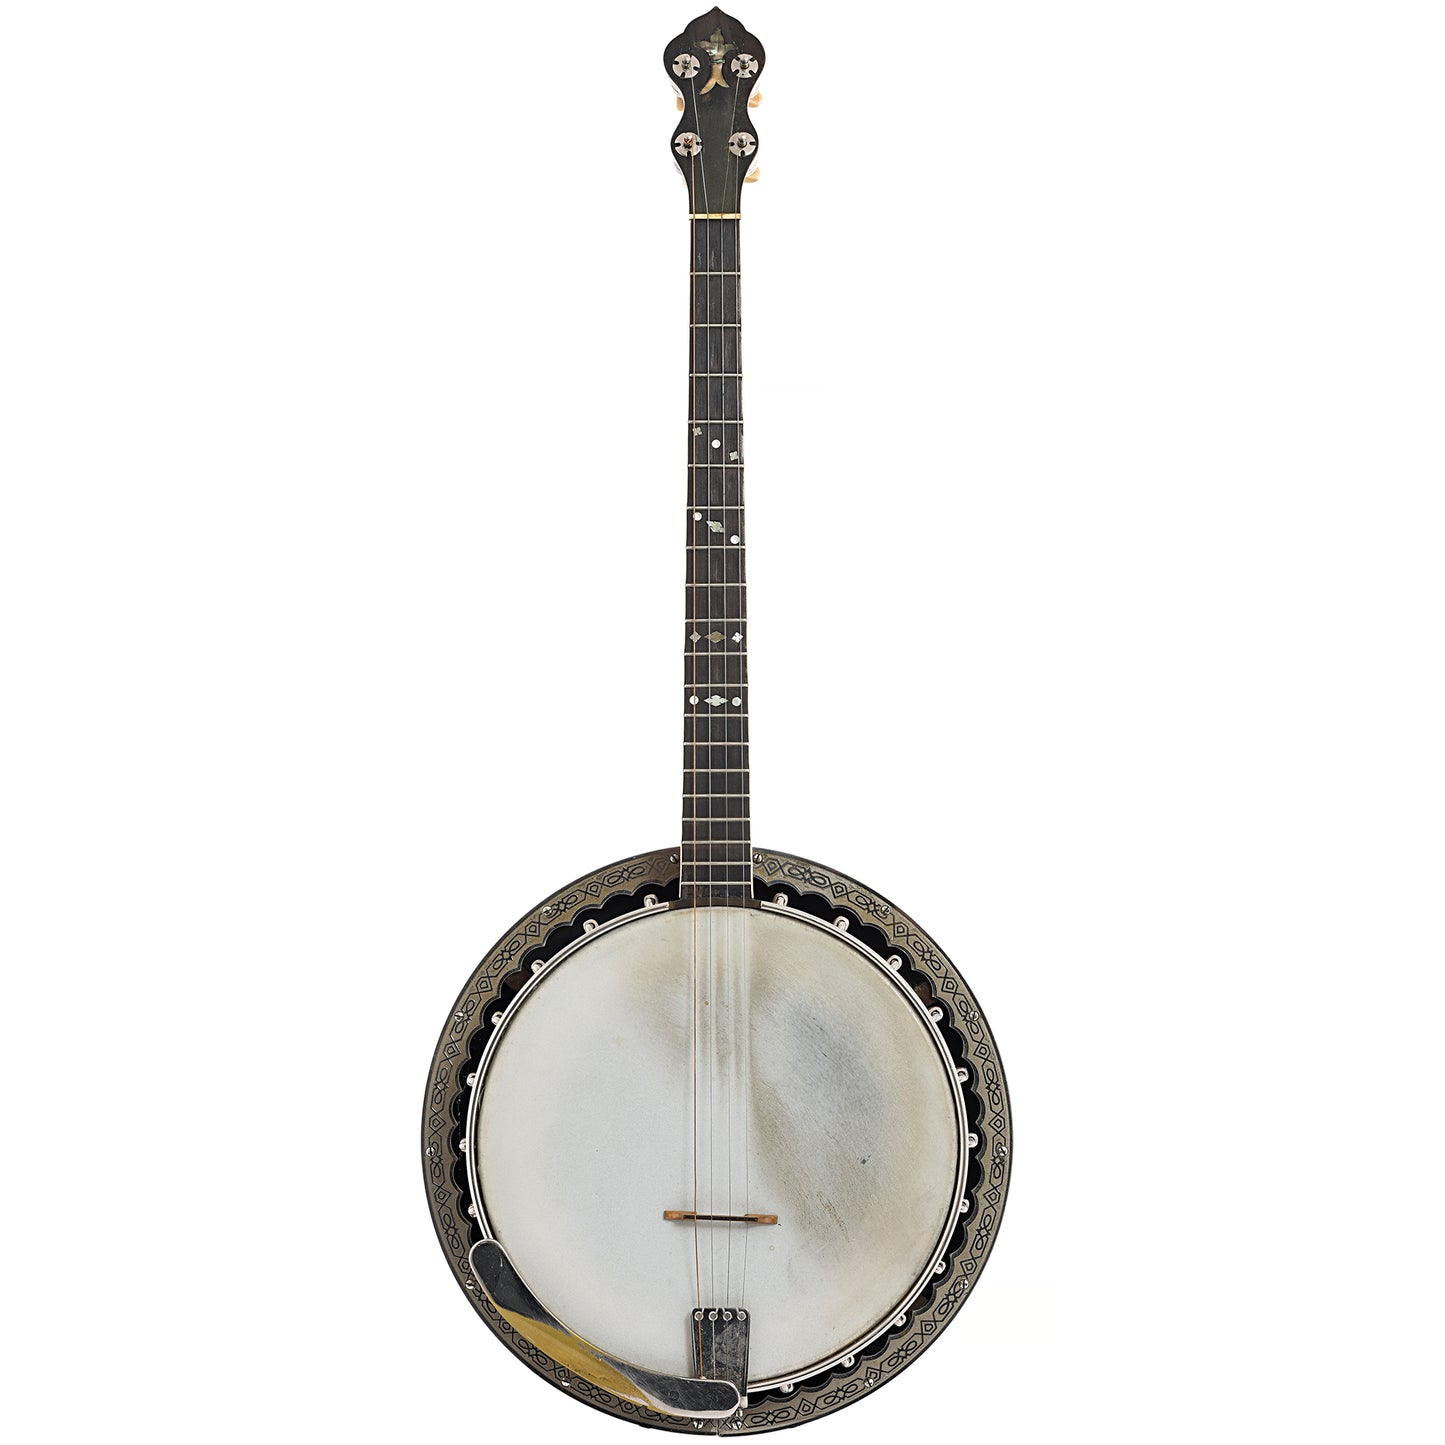 Full Front of Washburn Style 5177 "Dasant" Tenor Banjo 